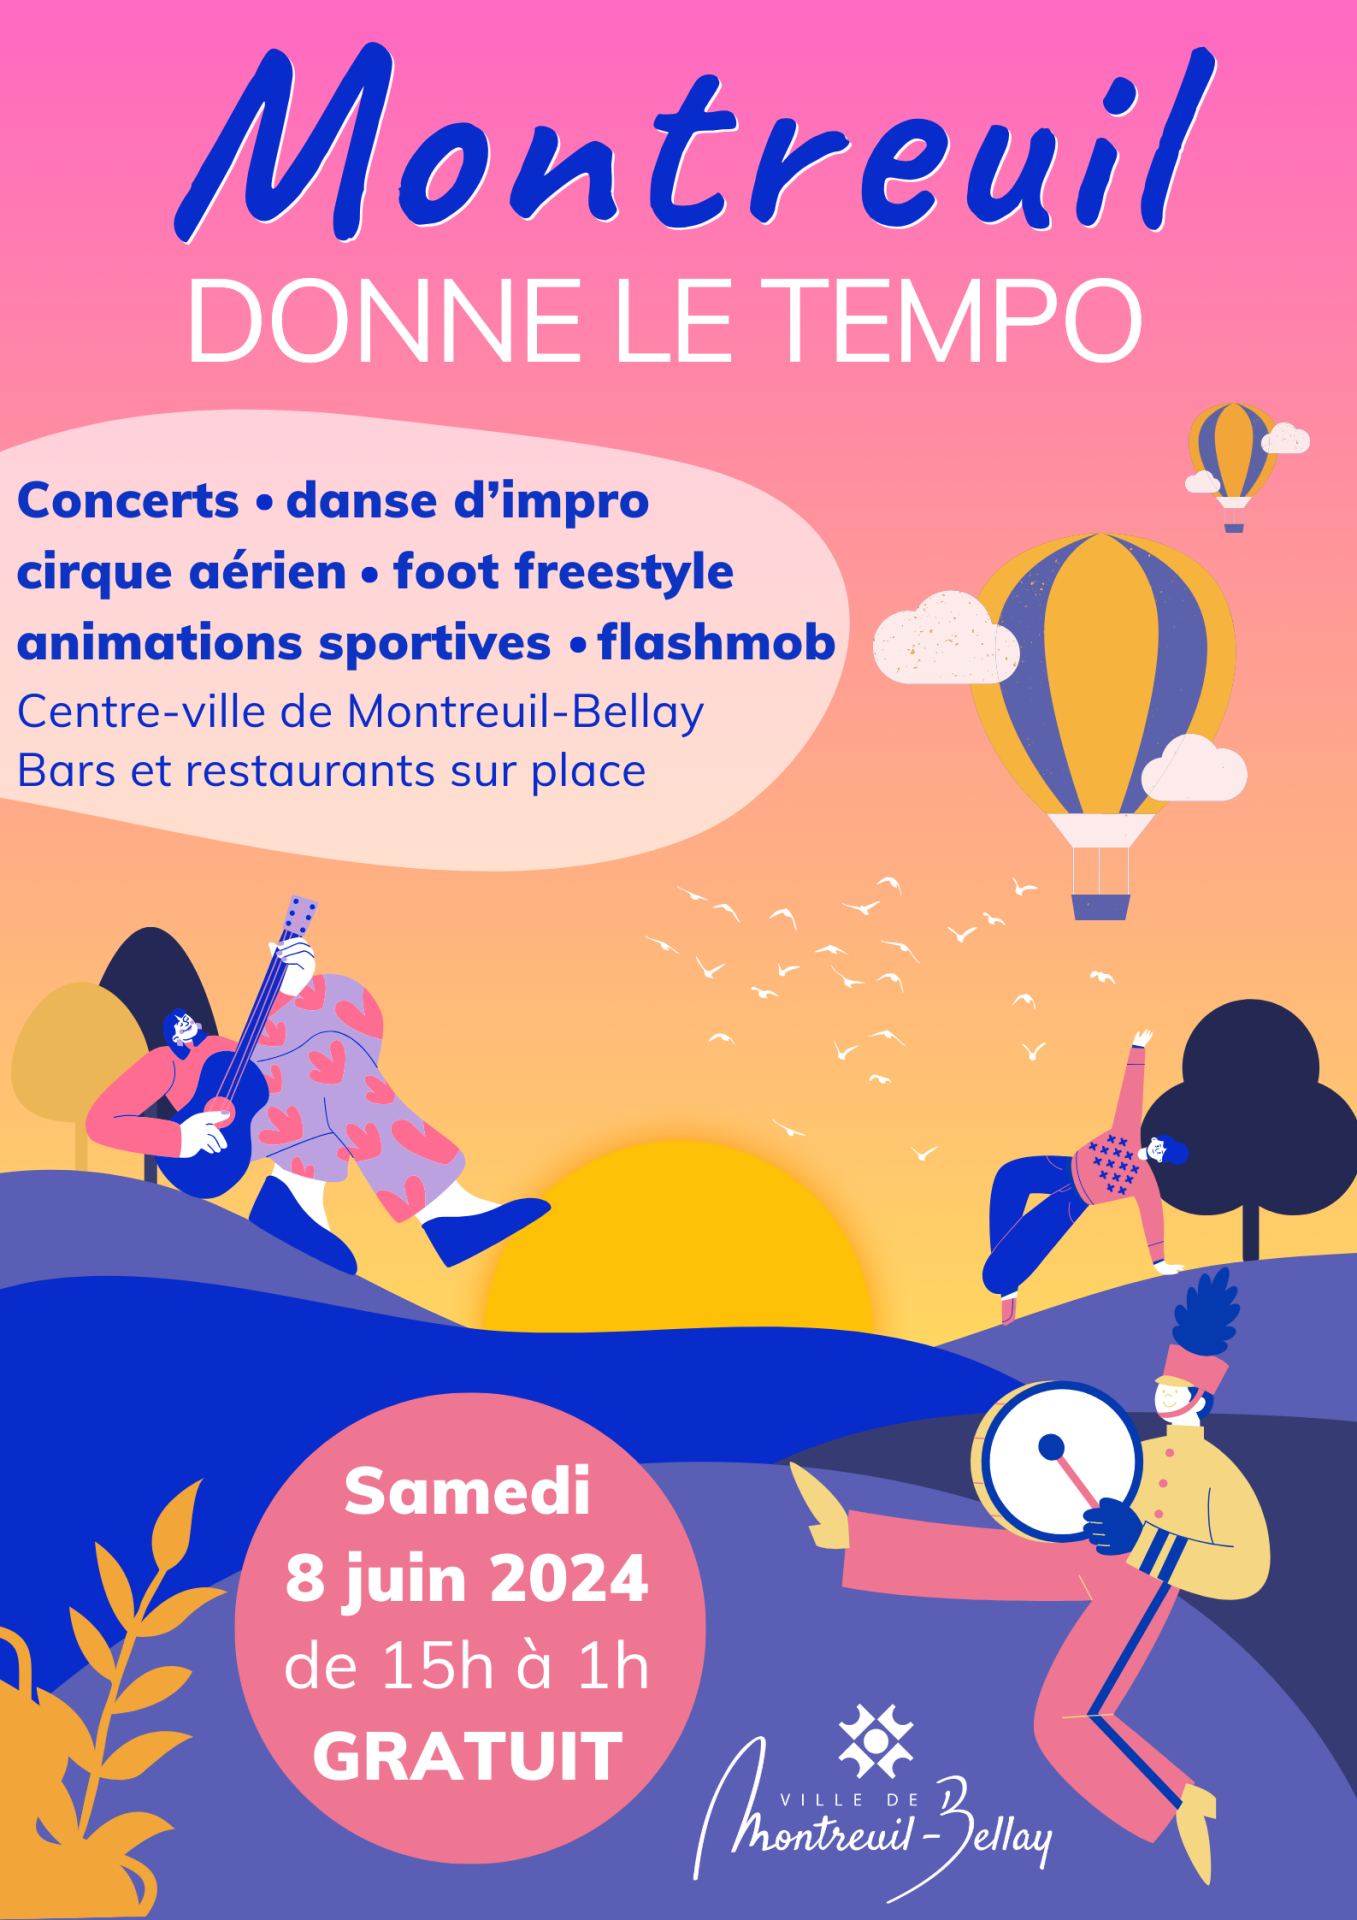 ACTU : Montreuil-Bellay. Musique, cirque et sport à l’honneur le temps d’une journée